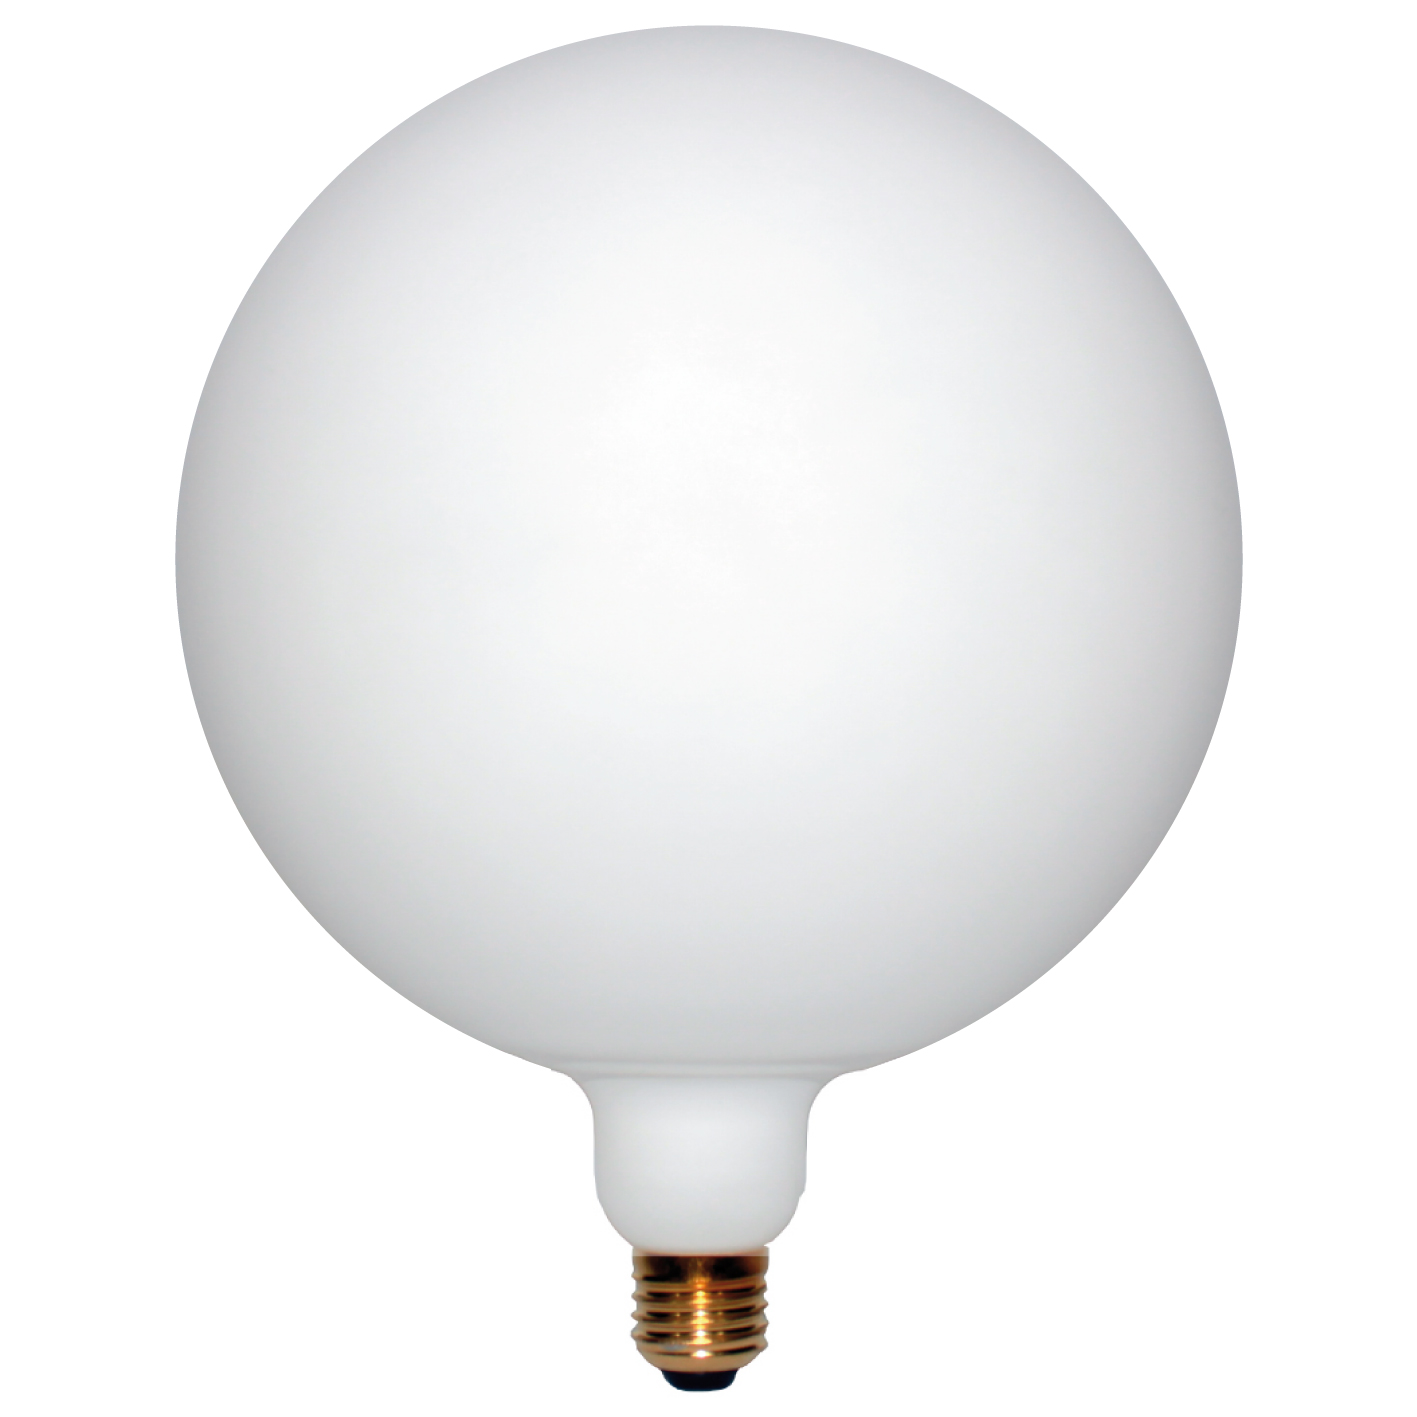 Ampoule LED forme Globe géante - Culot E27 - Coloris blanc mat - 7W - 4000K